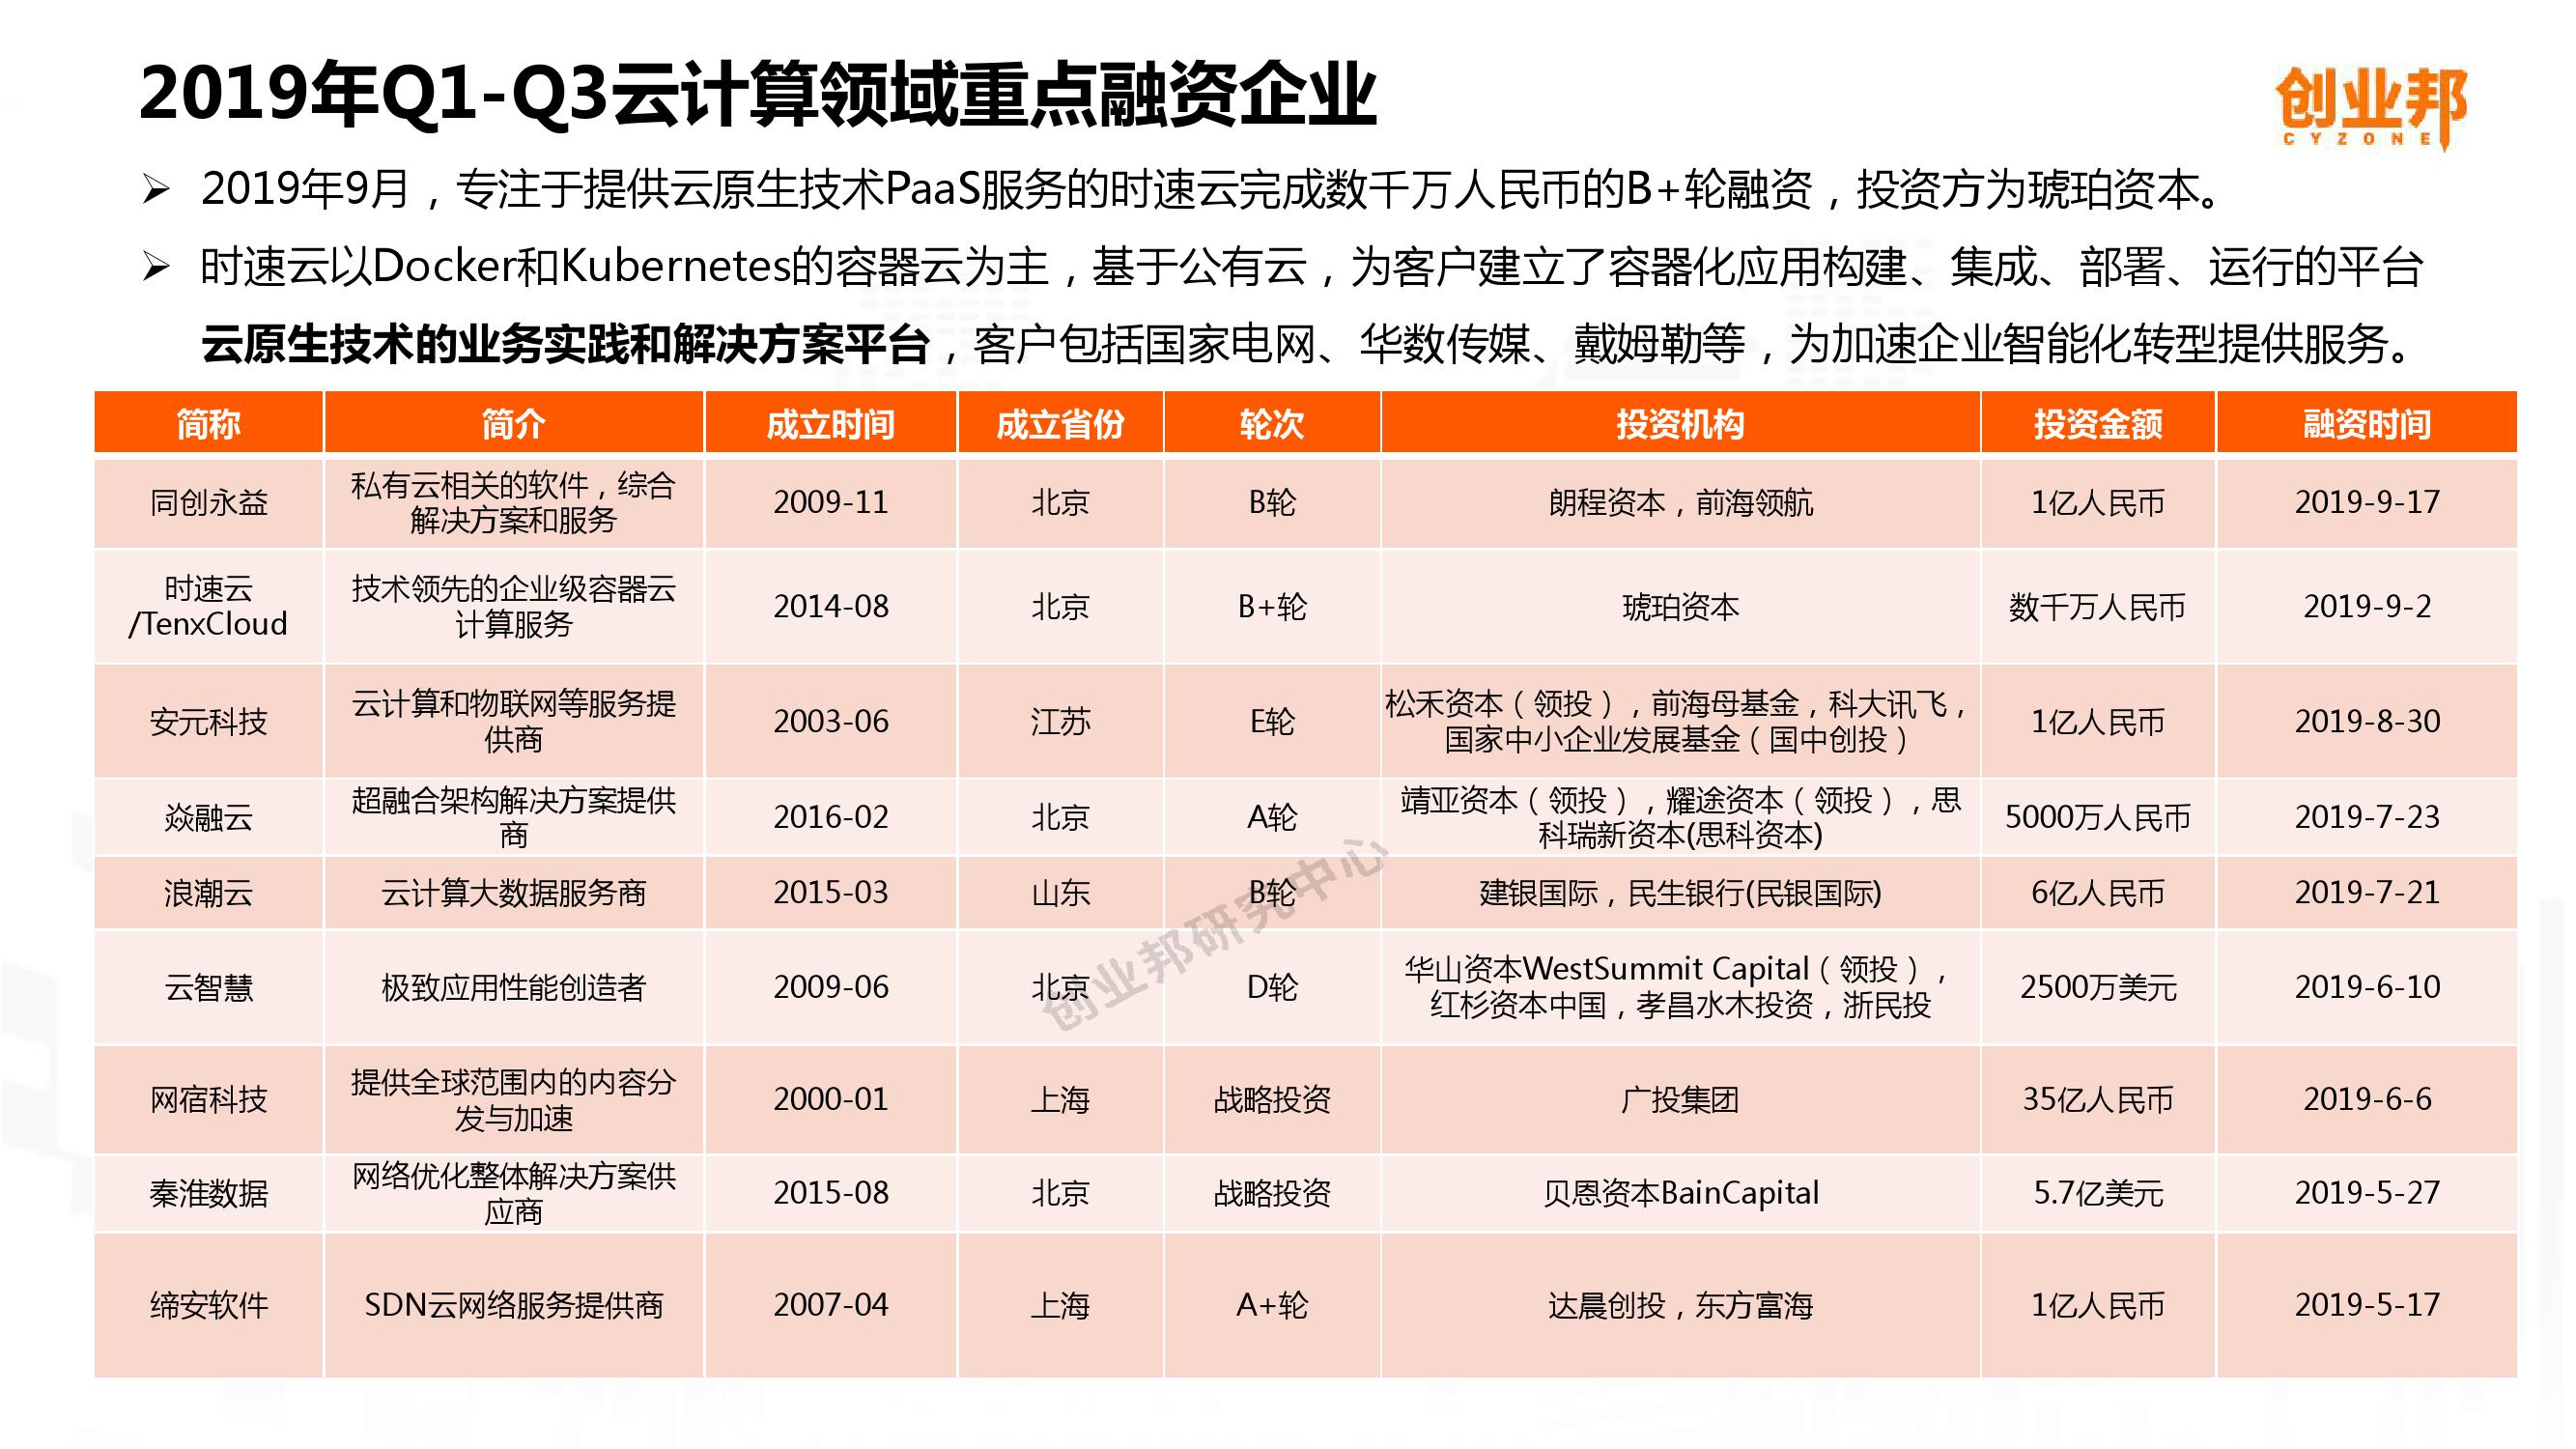 2019中国企业数字化智能化研究报告_000025-3